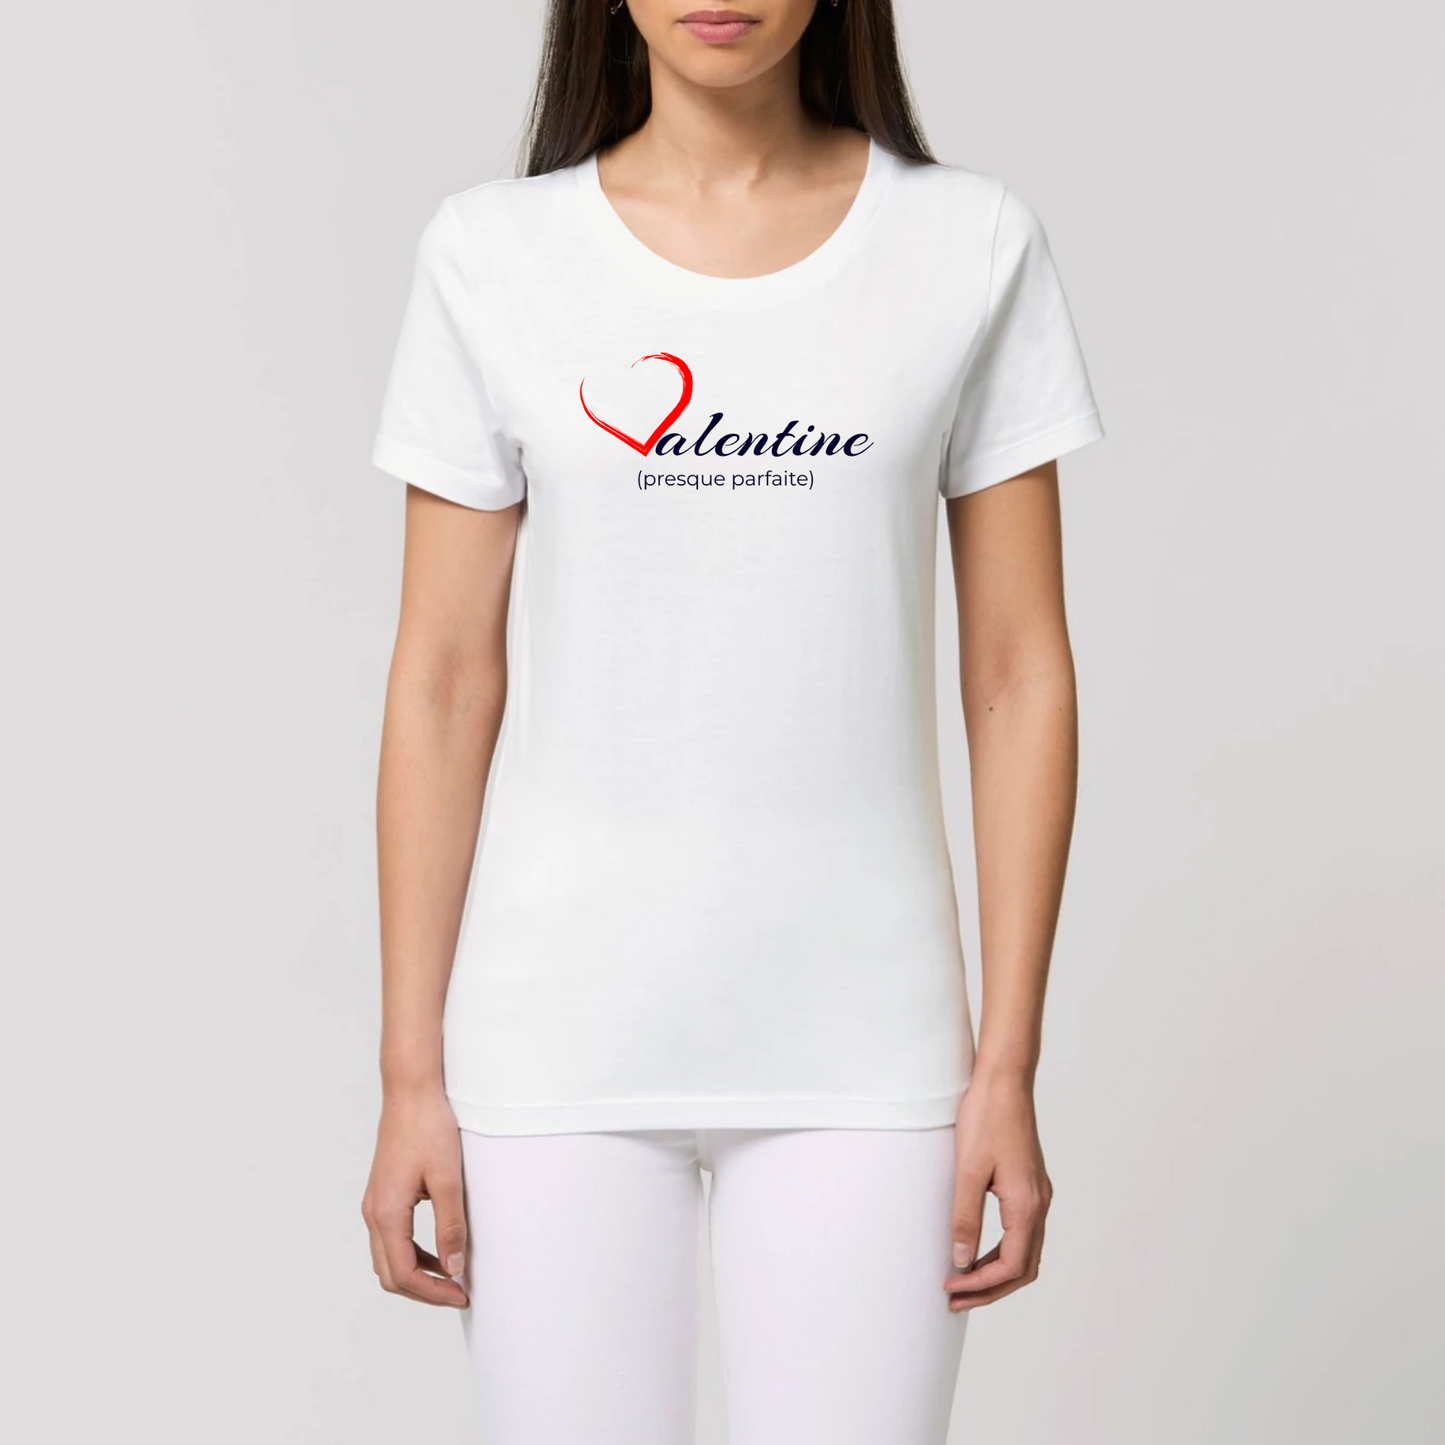 t-shirt femme Valentine coton bio T-French, saint valentin, idée cadeau, tee shirt femme, France, Blanc